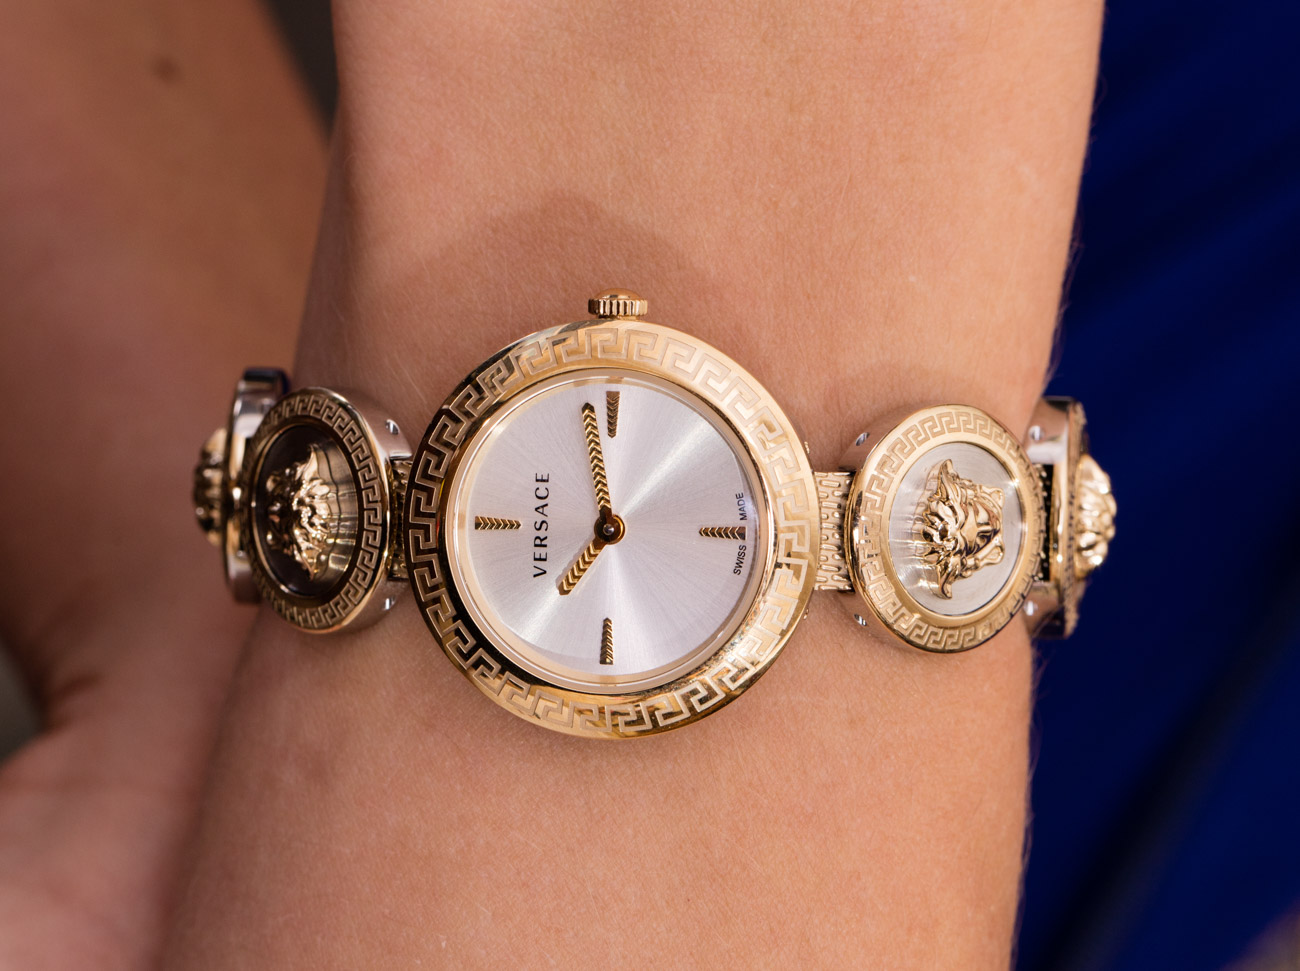 Mặt kính đồng hồ Versace chính hãng làm bằng chất liệu đá Sapphire cao cấp